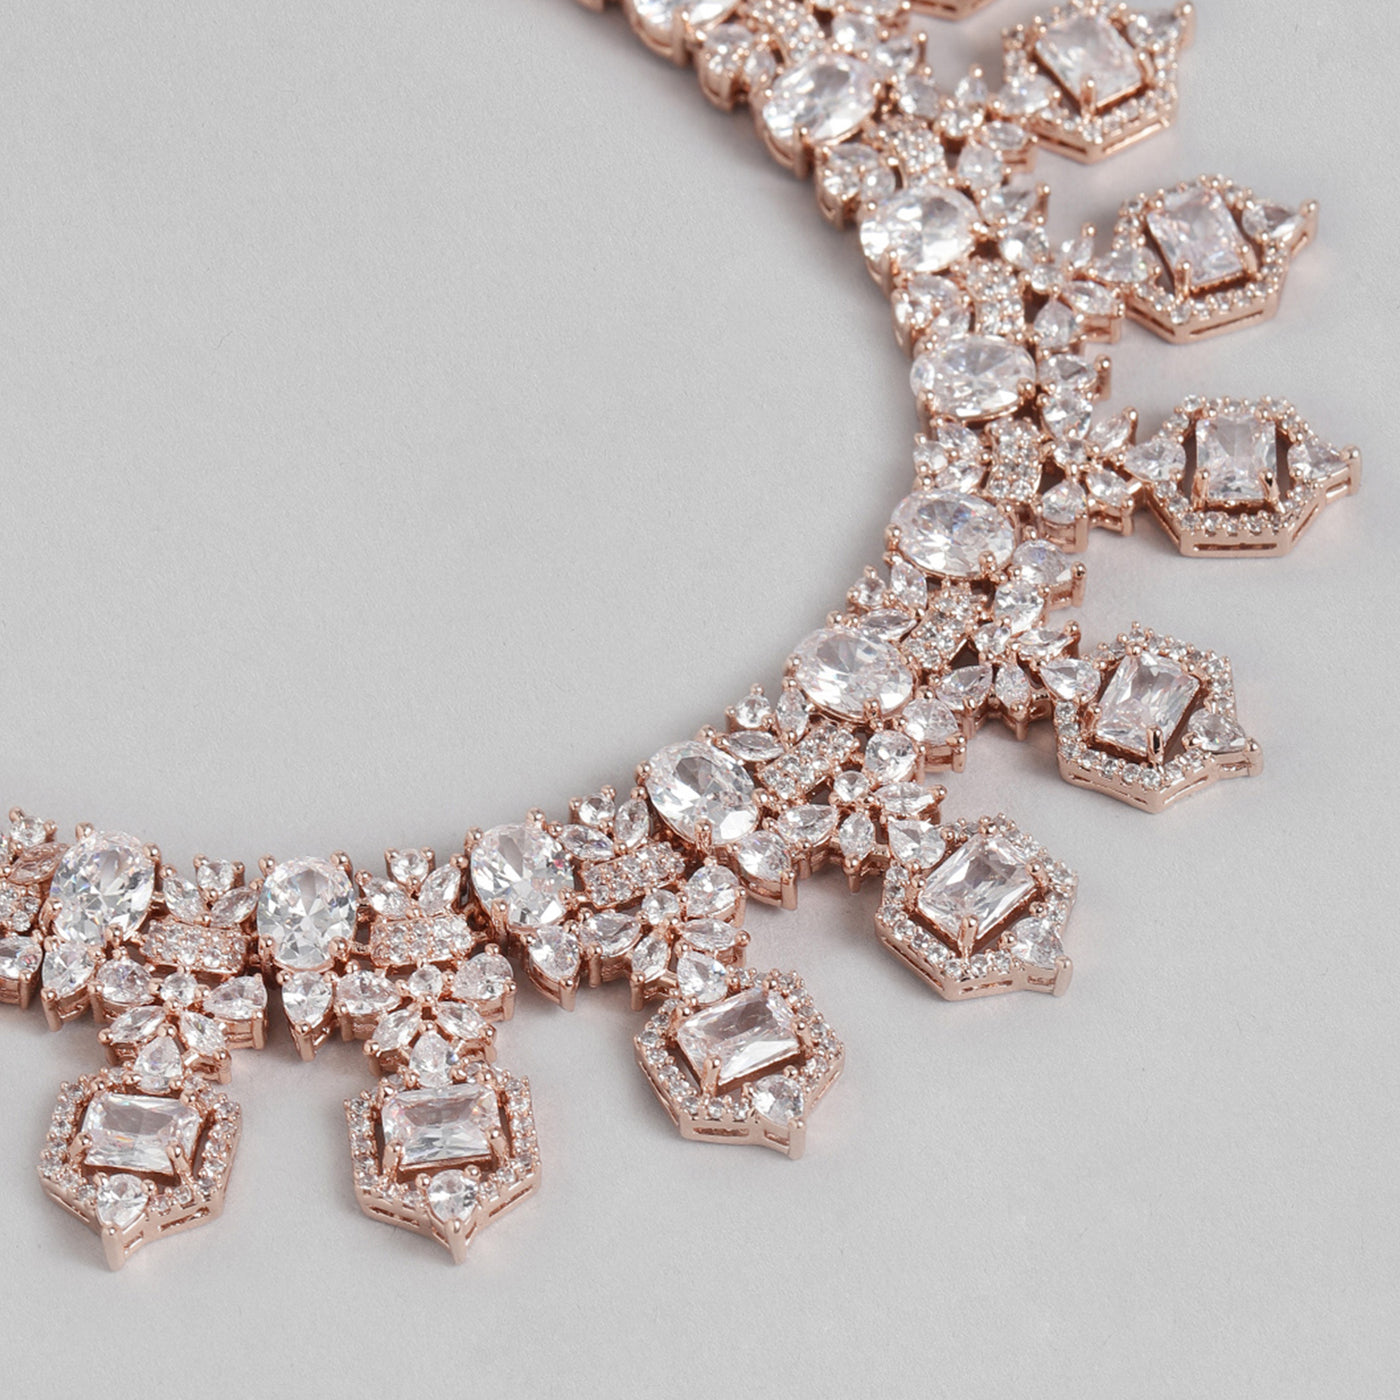 Estele Rhodium Plated CZ Astonishing Necklace Set for Women